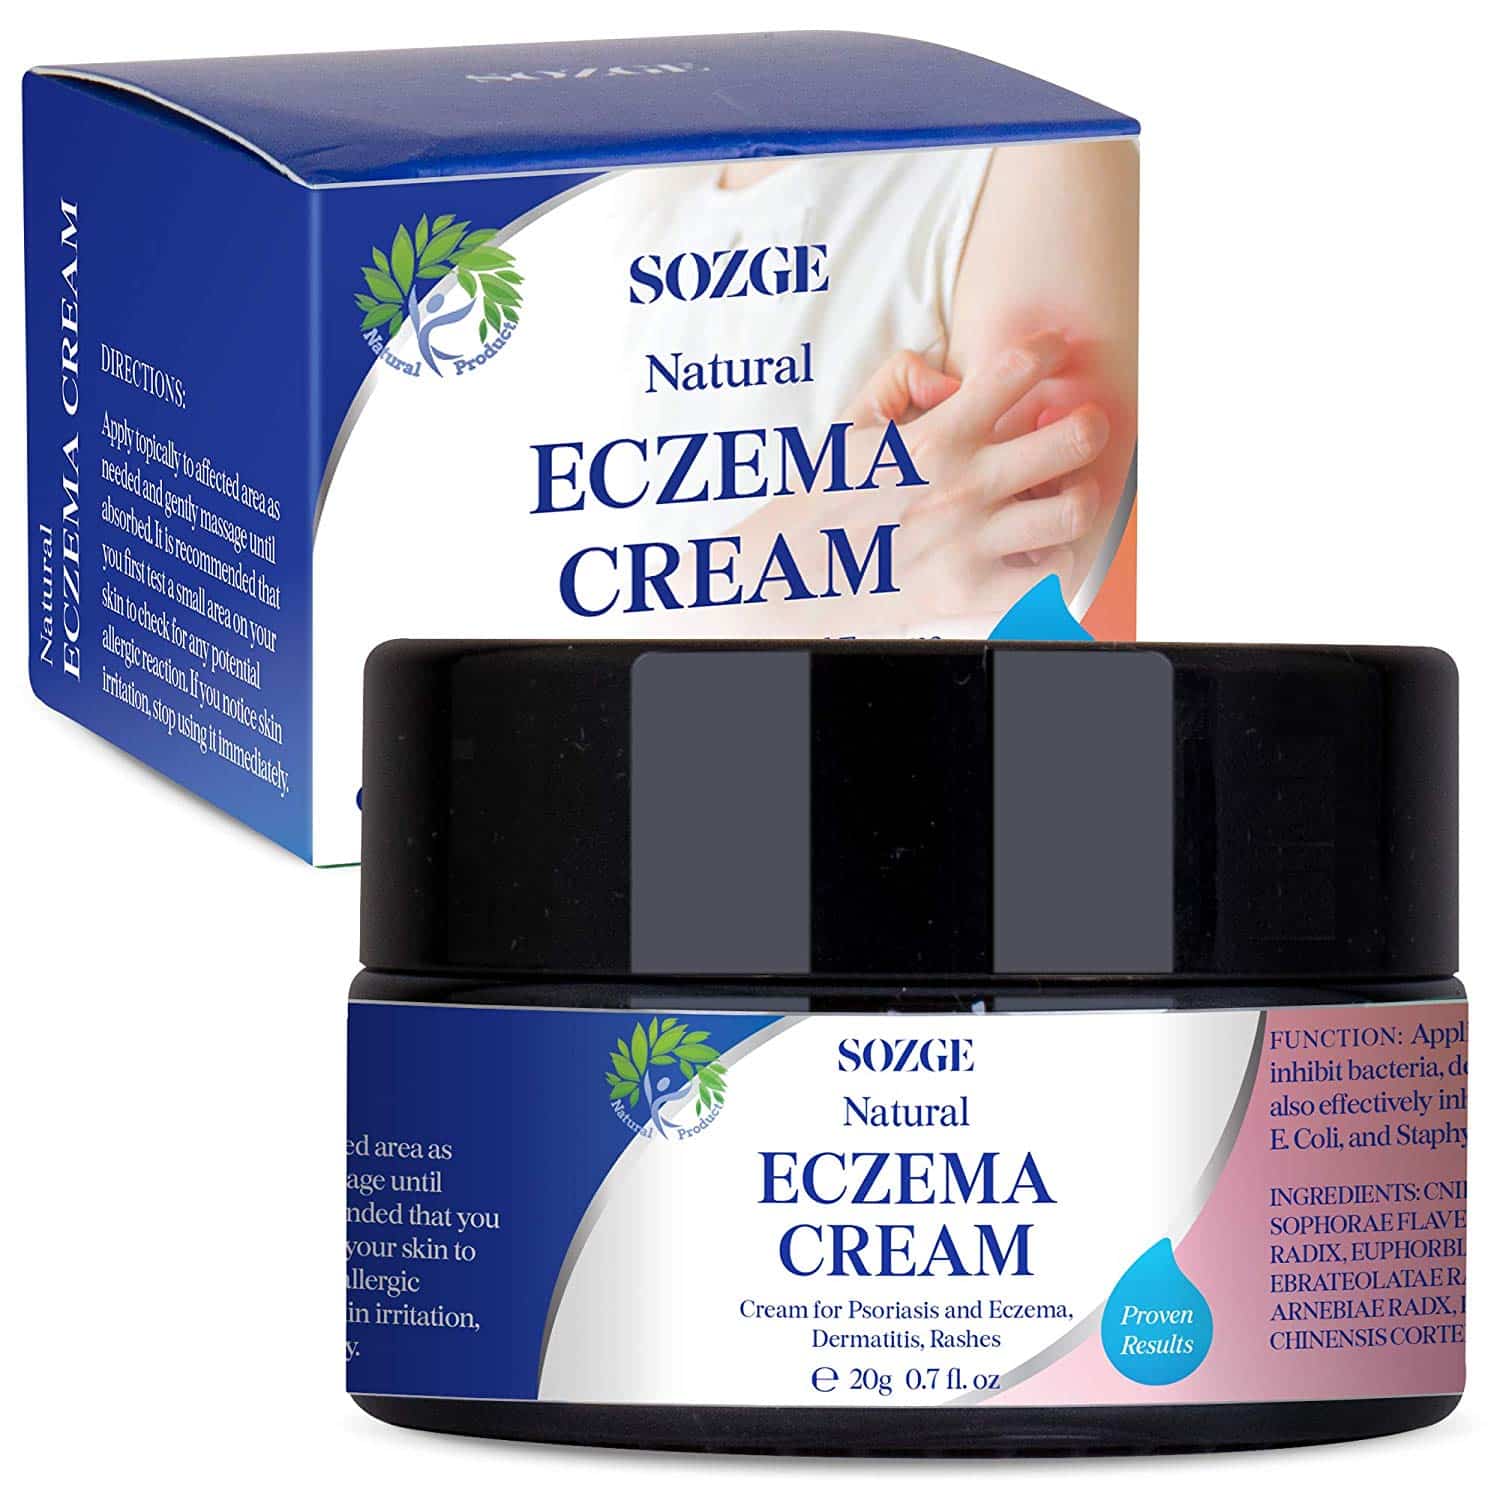 æé«ã?®ã³ã¬ã¯ã·ã§ã³ eczema cream for face 337878